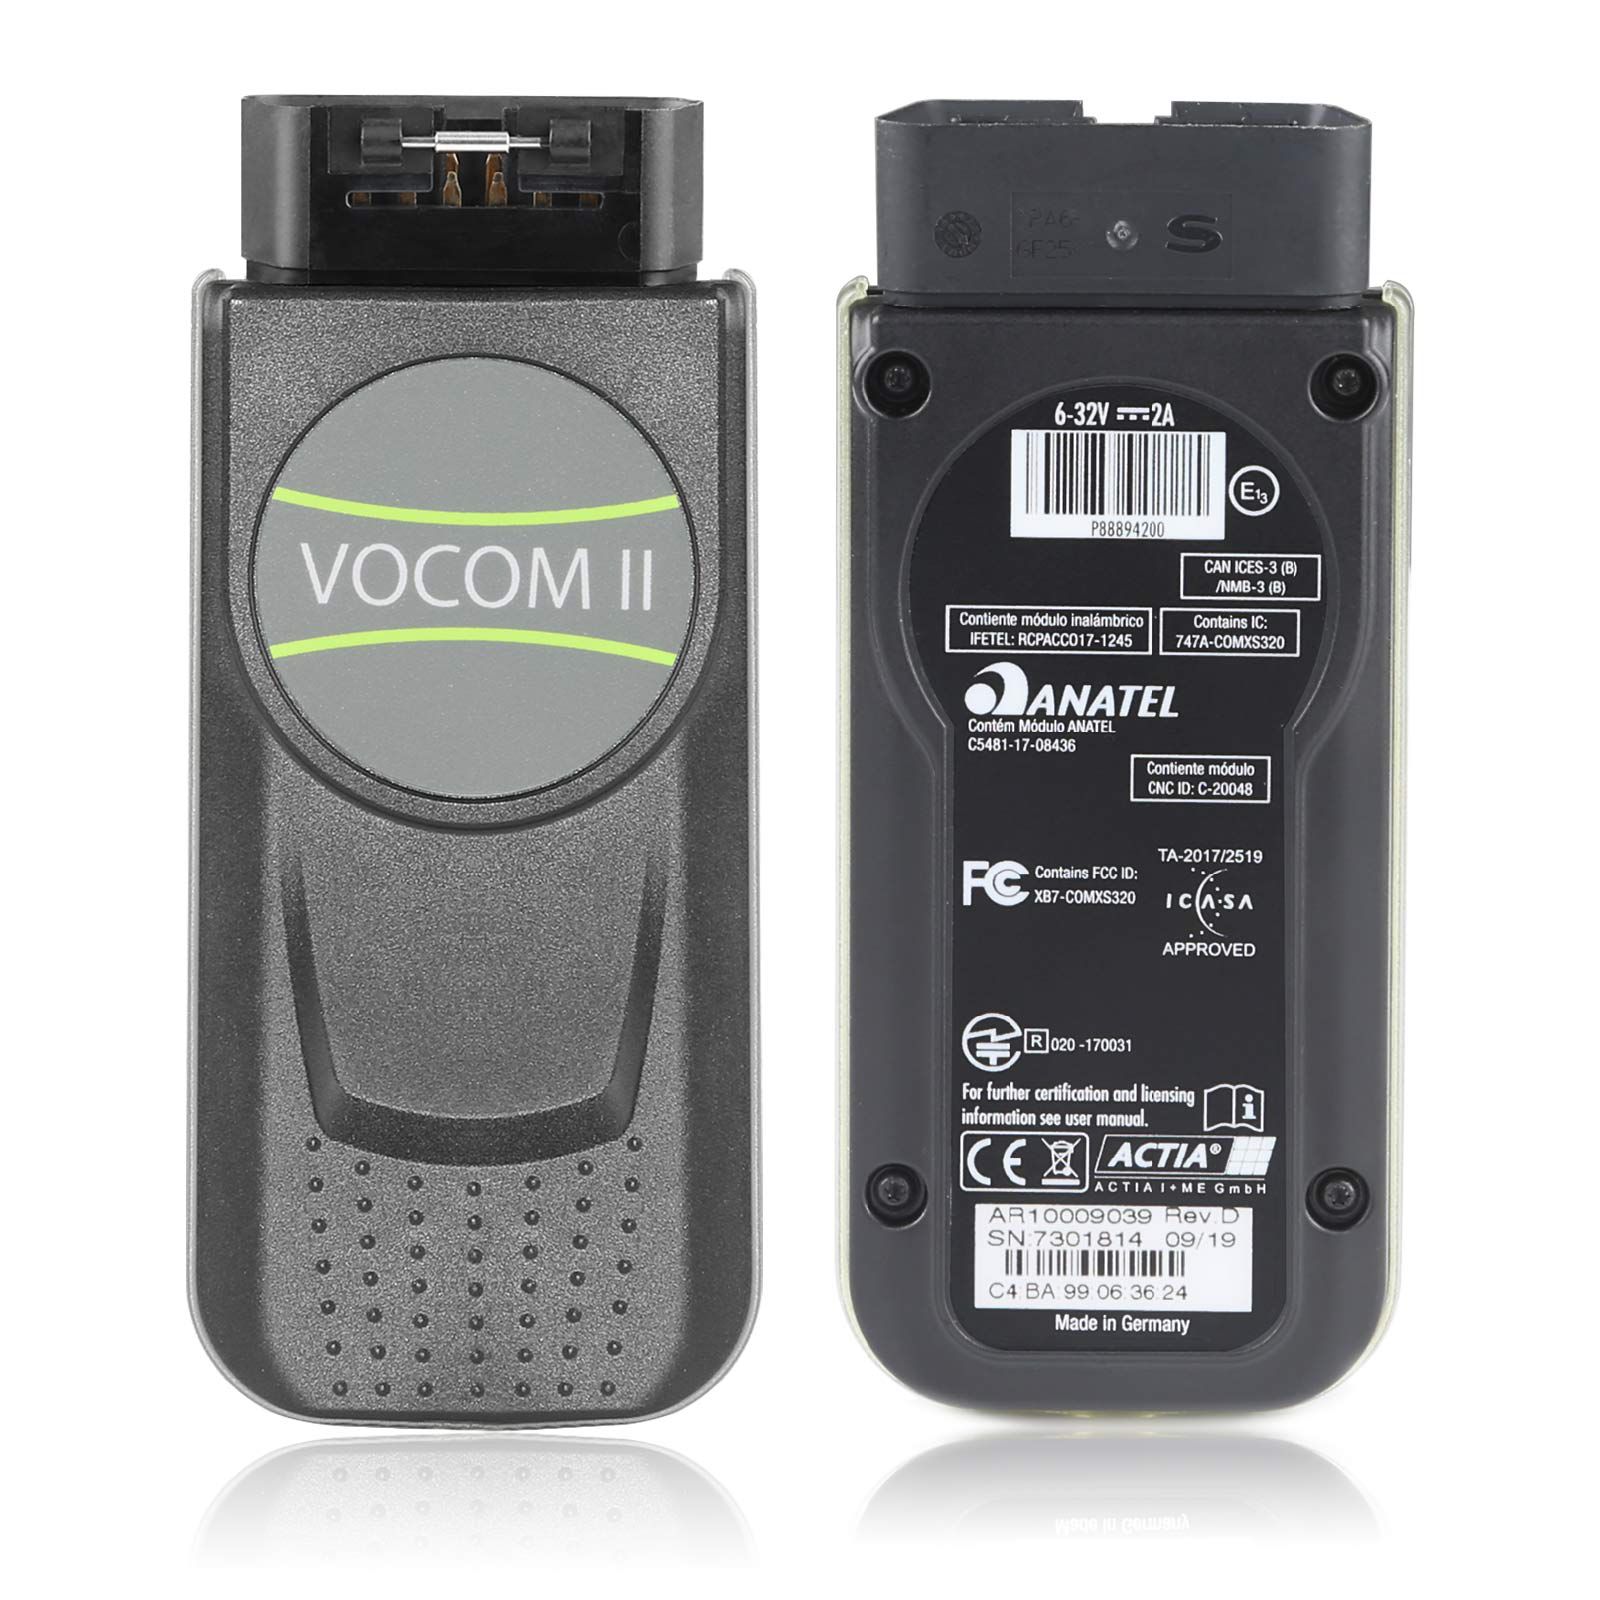 기본 미니 볼보 Vocom II 어댑터 88894200 트럭 진단 도구는 볼보/르노/UD/Mack 트럭의 Wifi 작동을 지원합니다.